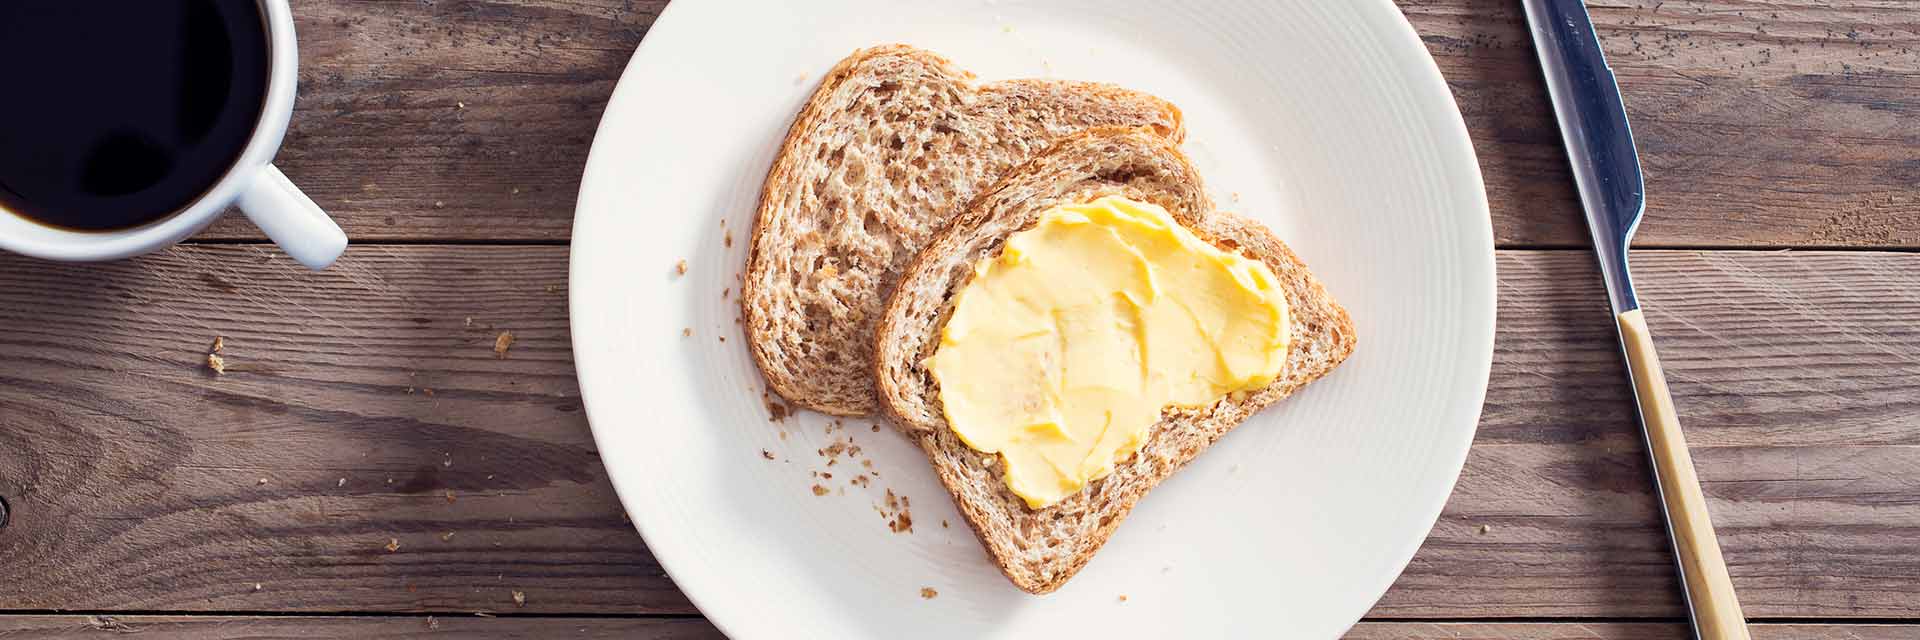 El origen de la margarina, creada a partir de aceites vegetales, está en los campos de cultivo del girasol y linaza.